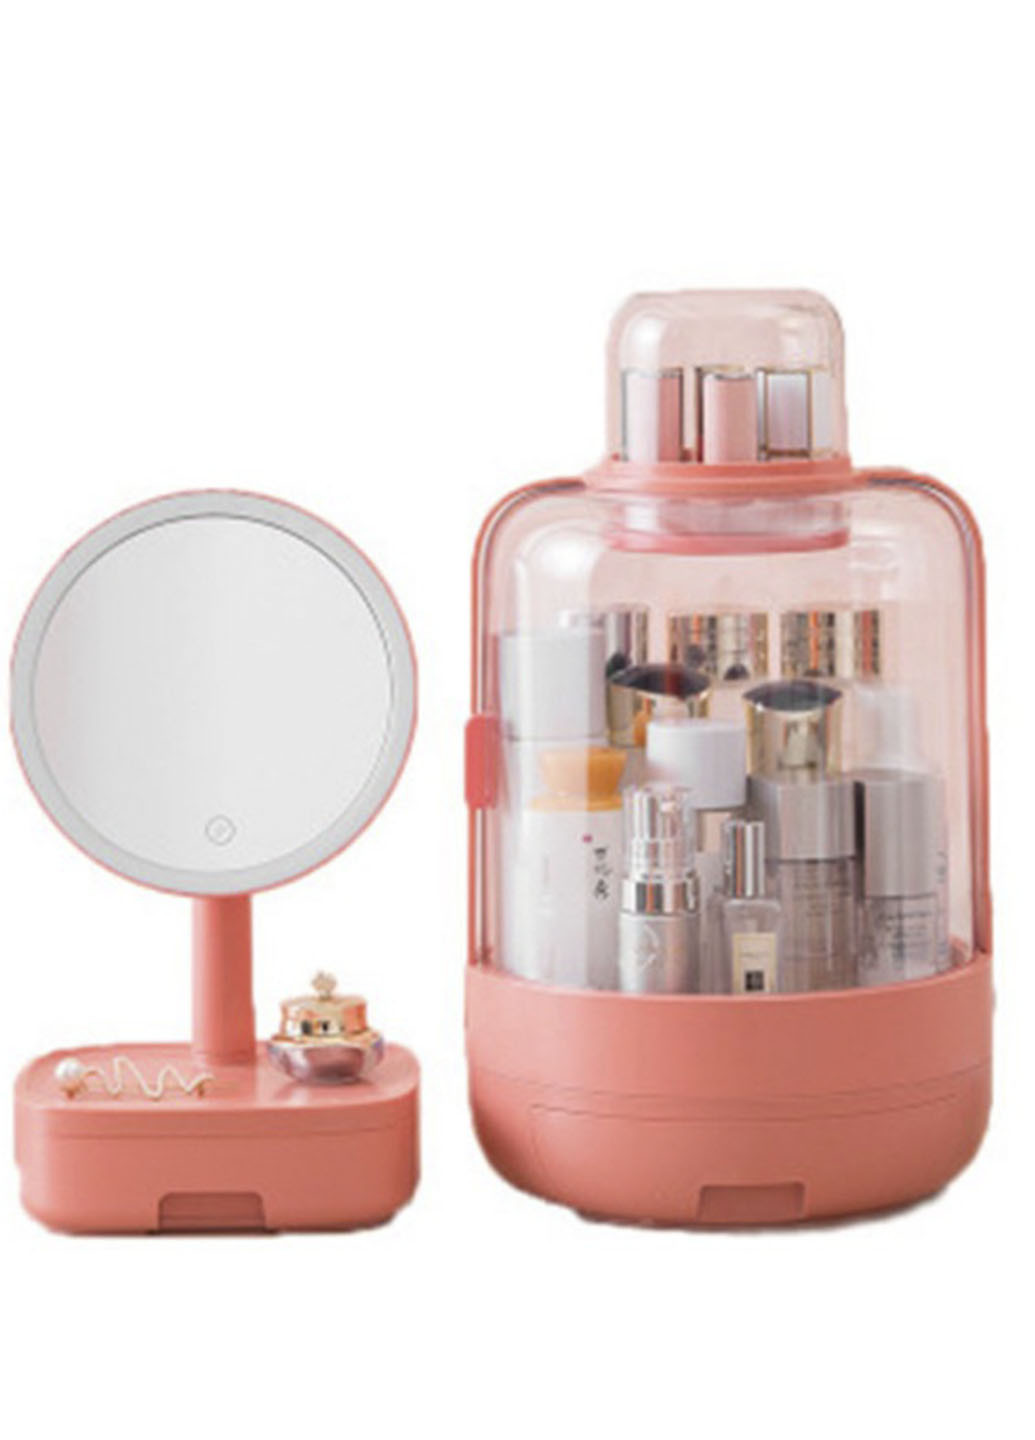 Набор для макияжа 2в1 LED зеркало Органайзер для косметики Розовый W-51 косметичка + зеркало Good Idea розовый